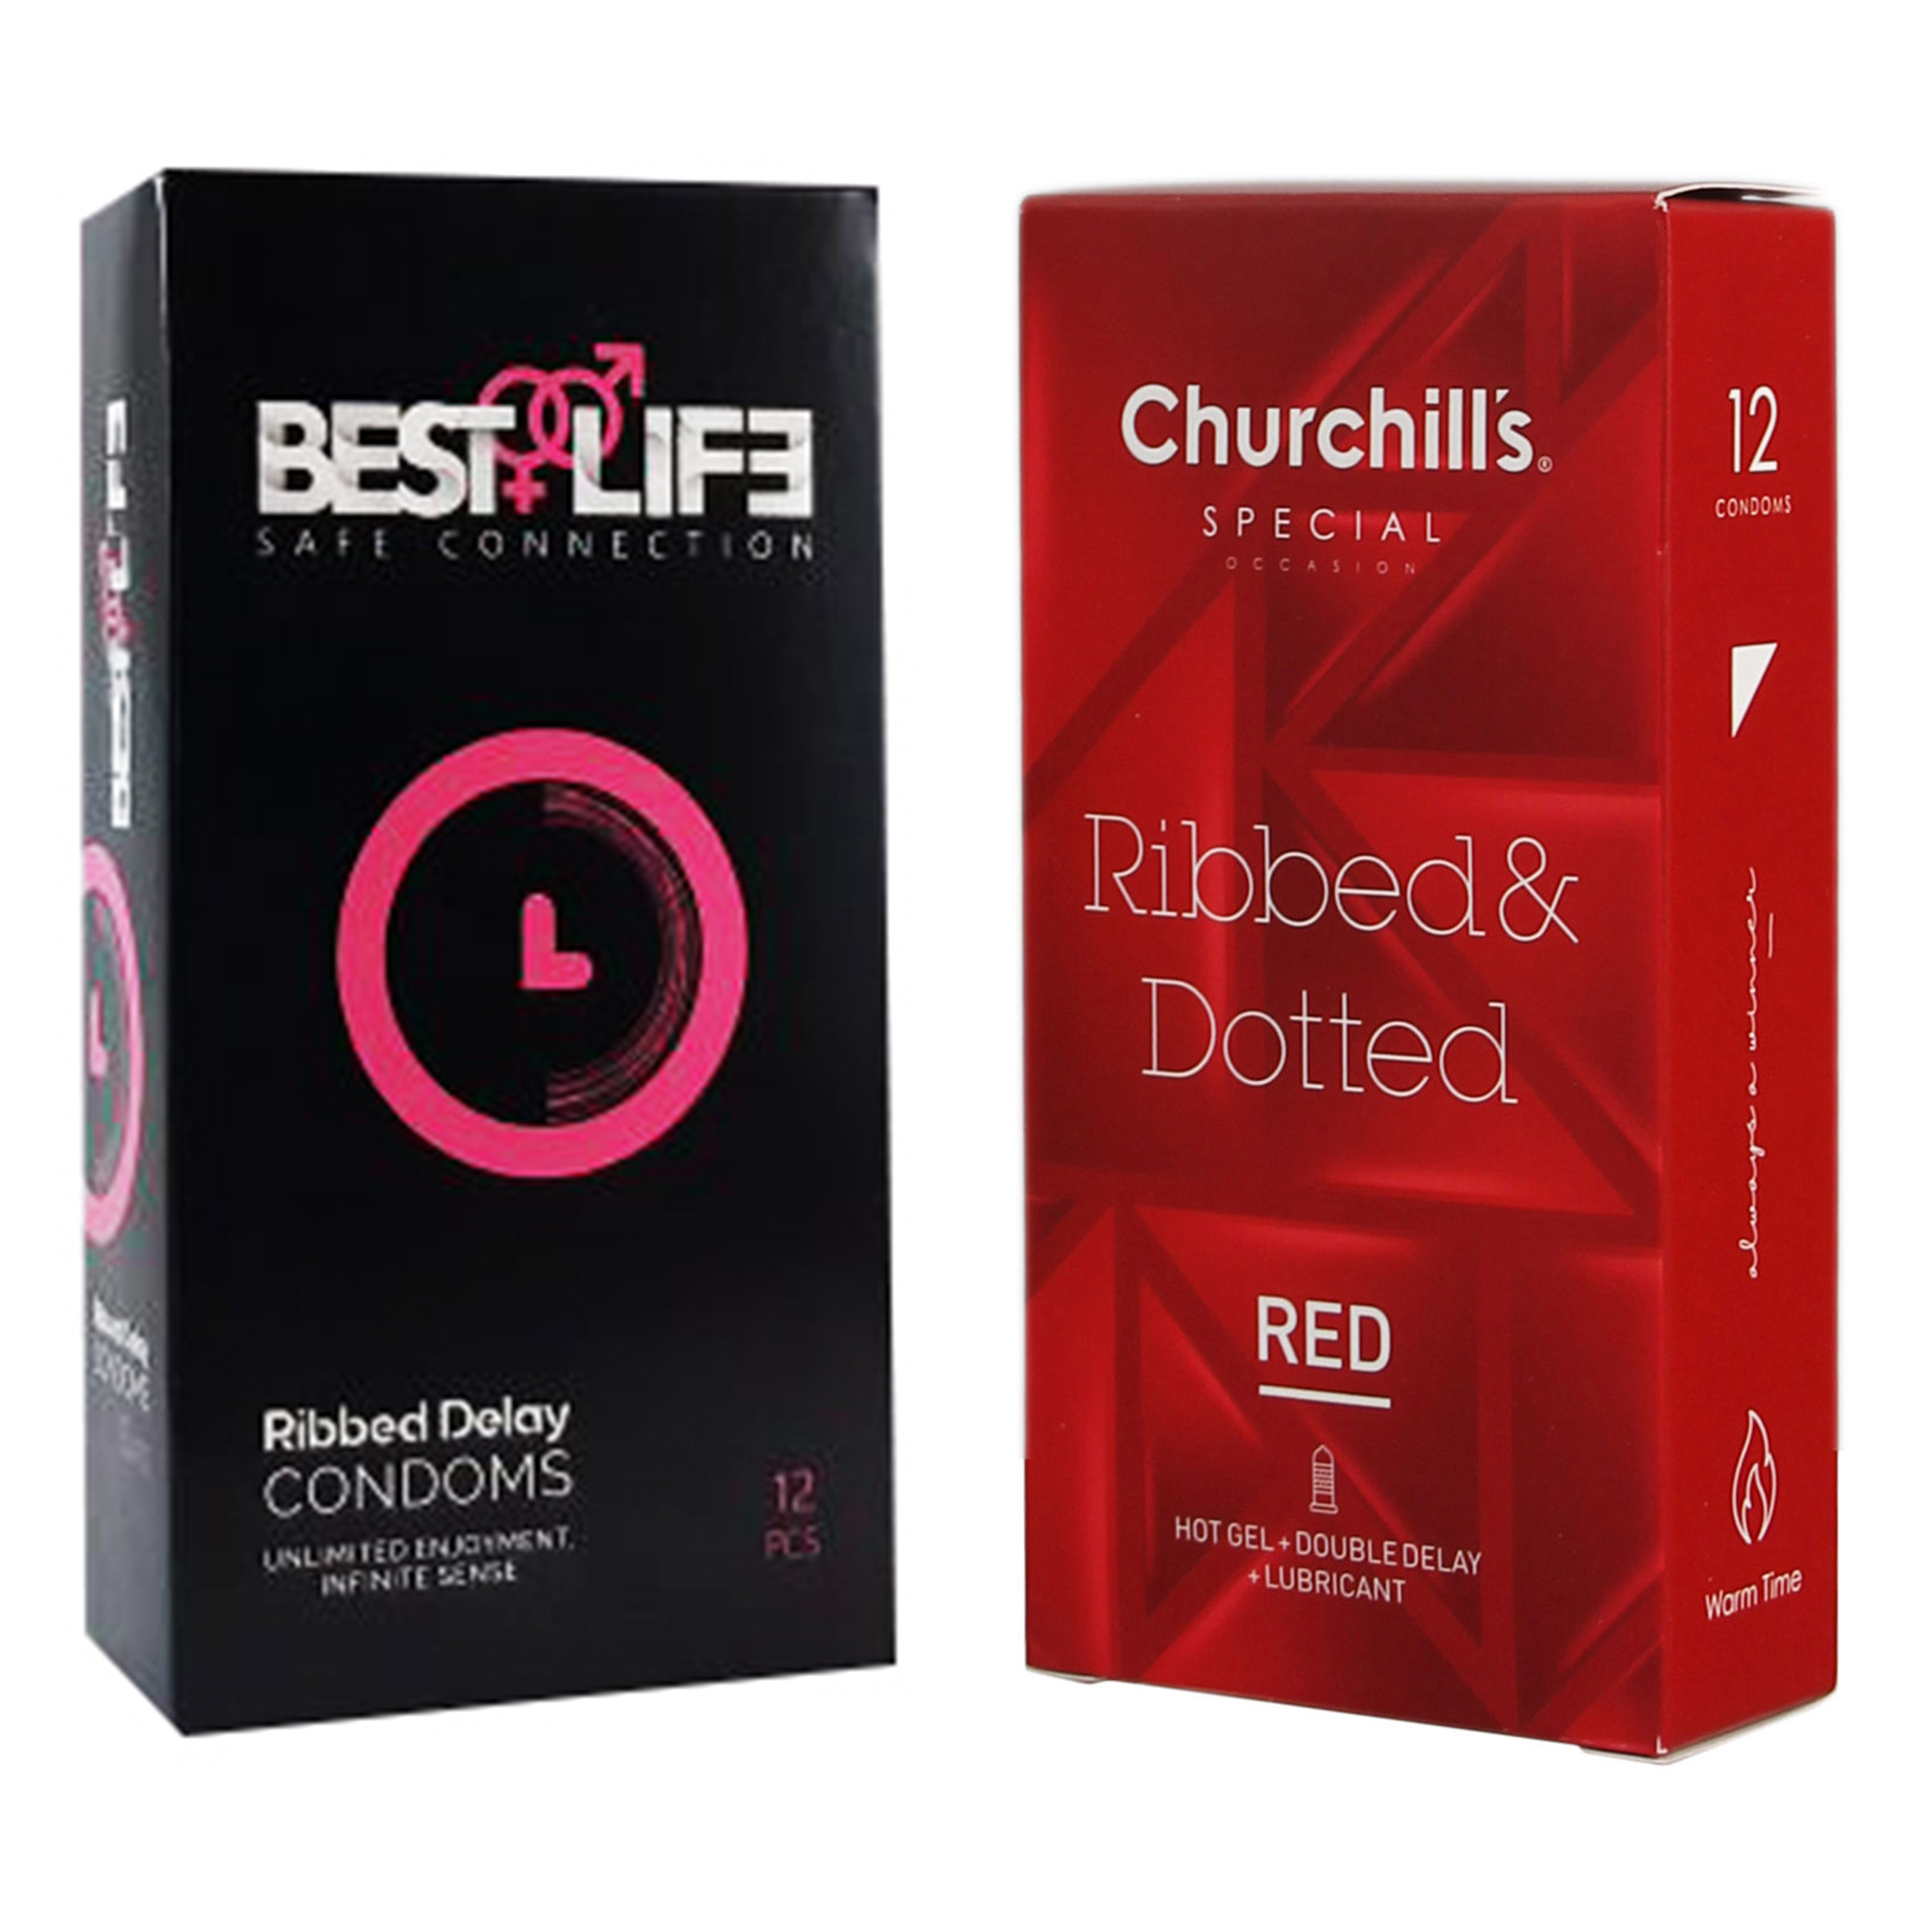 کاندوم چرچیلز مدل Ribbed & Dotted Red بسته 12 عددی به همراه کاندوم بست لایف مدل Ribbed Delay بسته 12 عددی